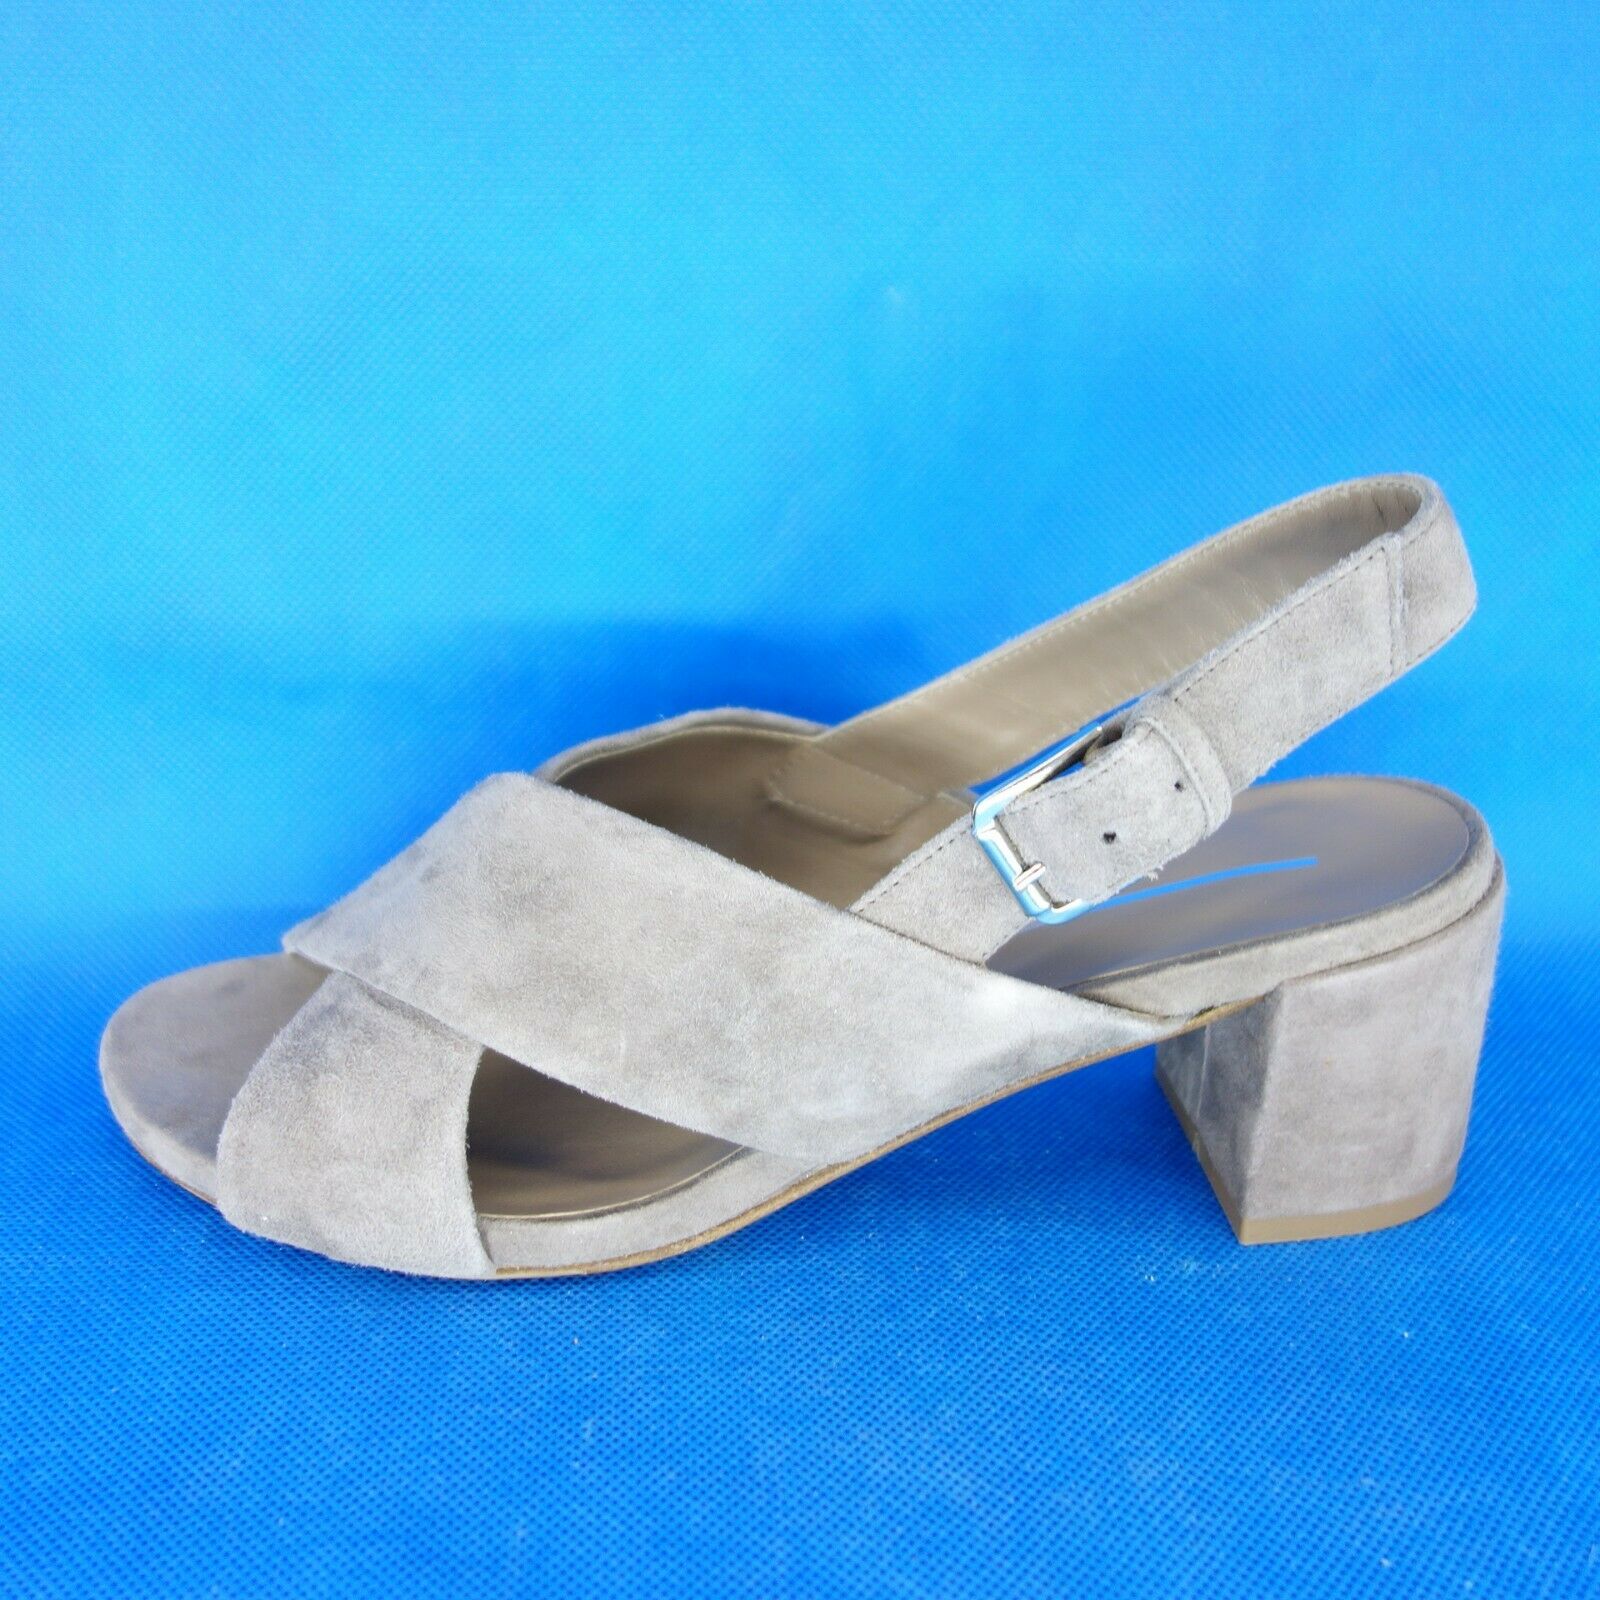 Damen Sommer Schuhe Damenschuhe Slingbacks Sandalen Sandaletten Pumps Leder Neu - EUR 41